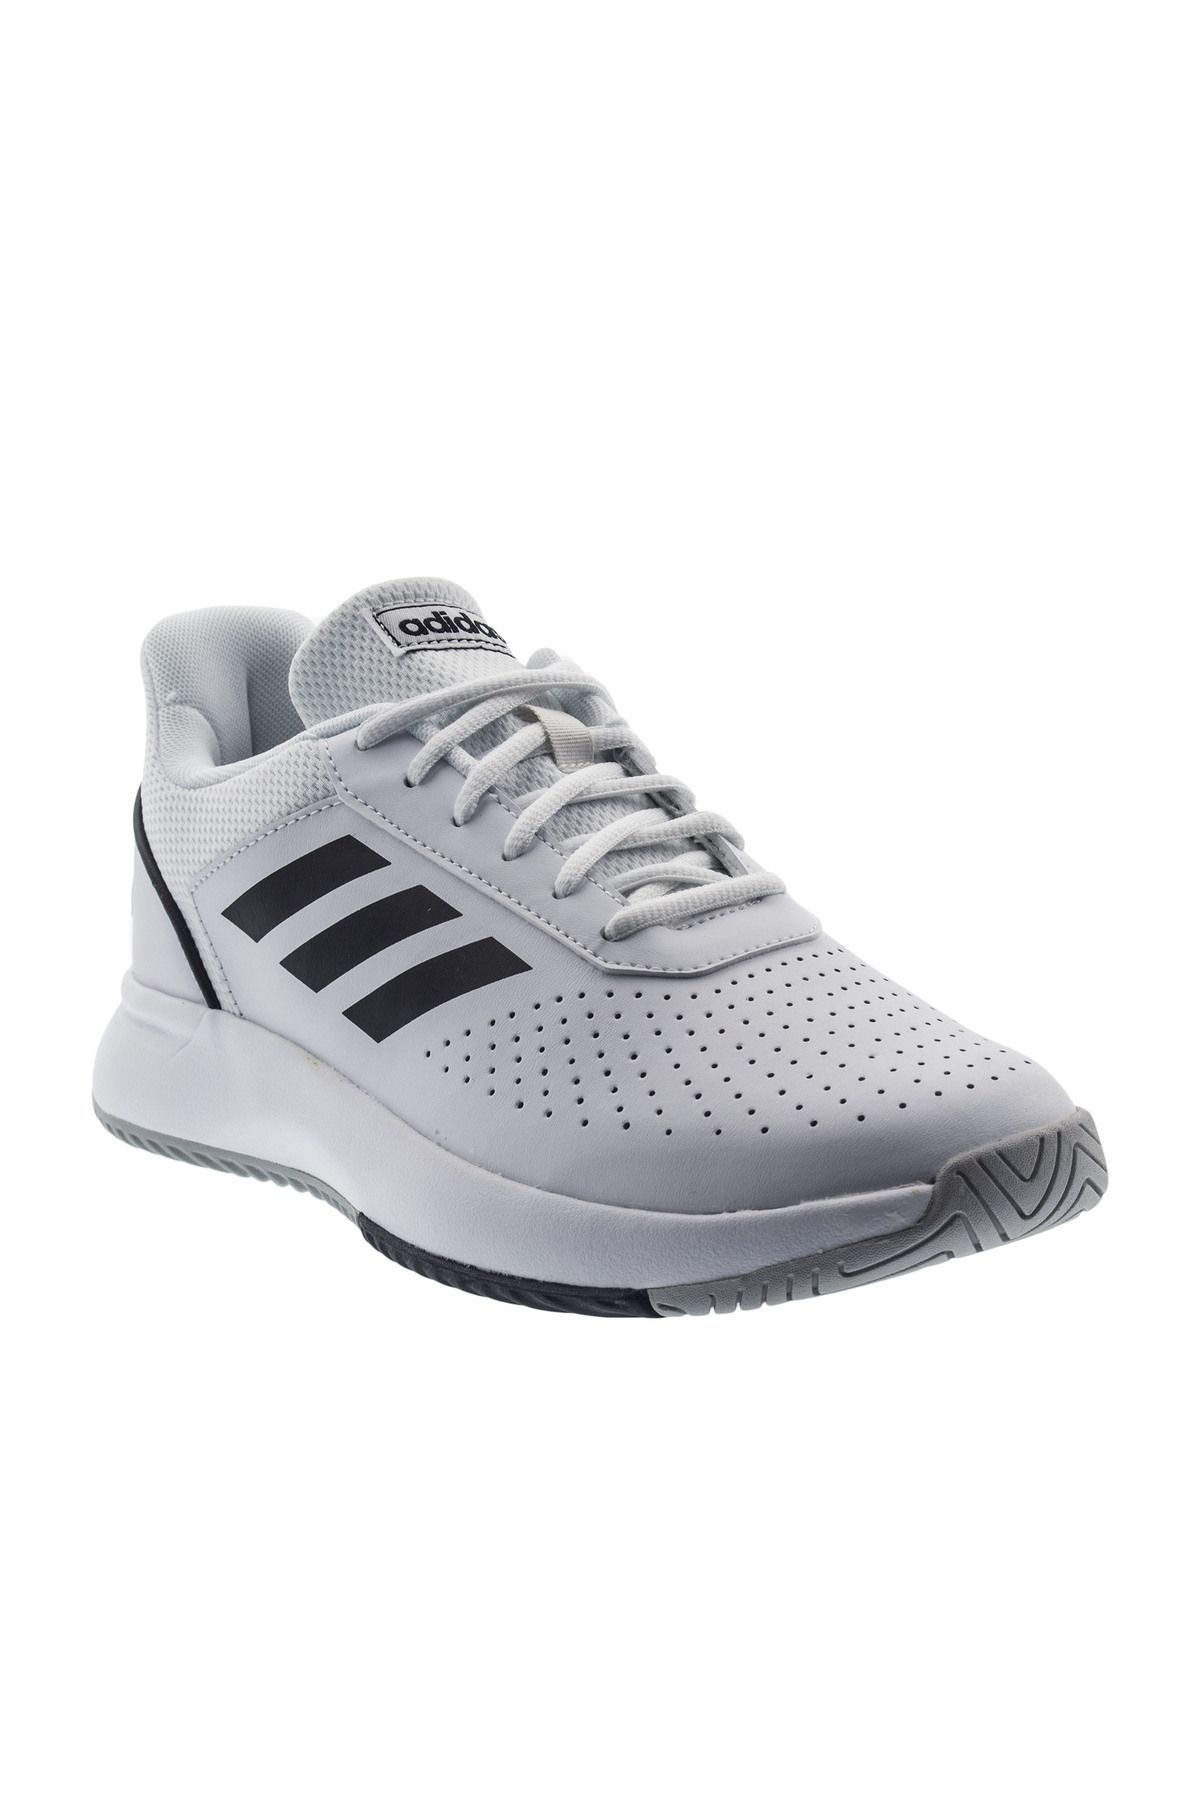 adidas COURTSMASH Beyaz Erkek Sneaker Ayakkabı 100575535